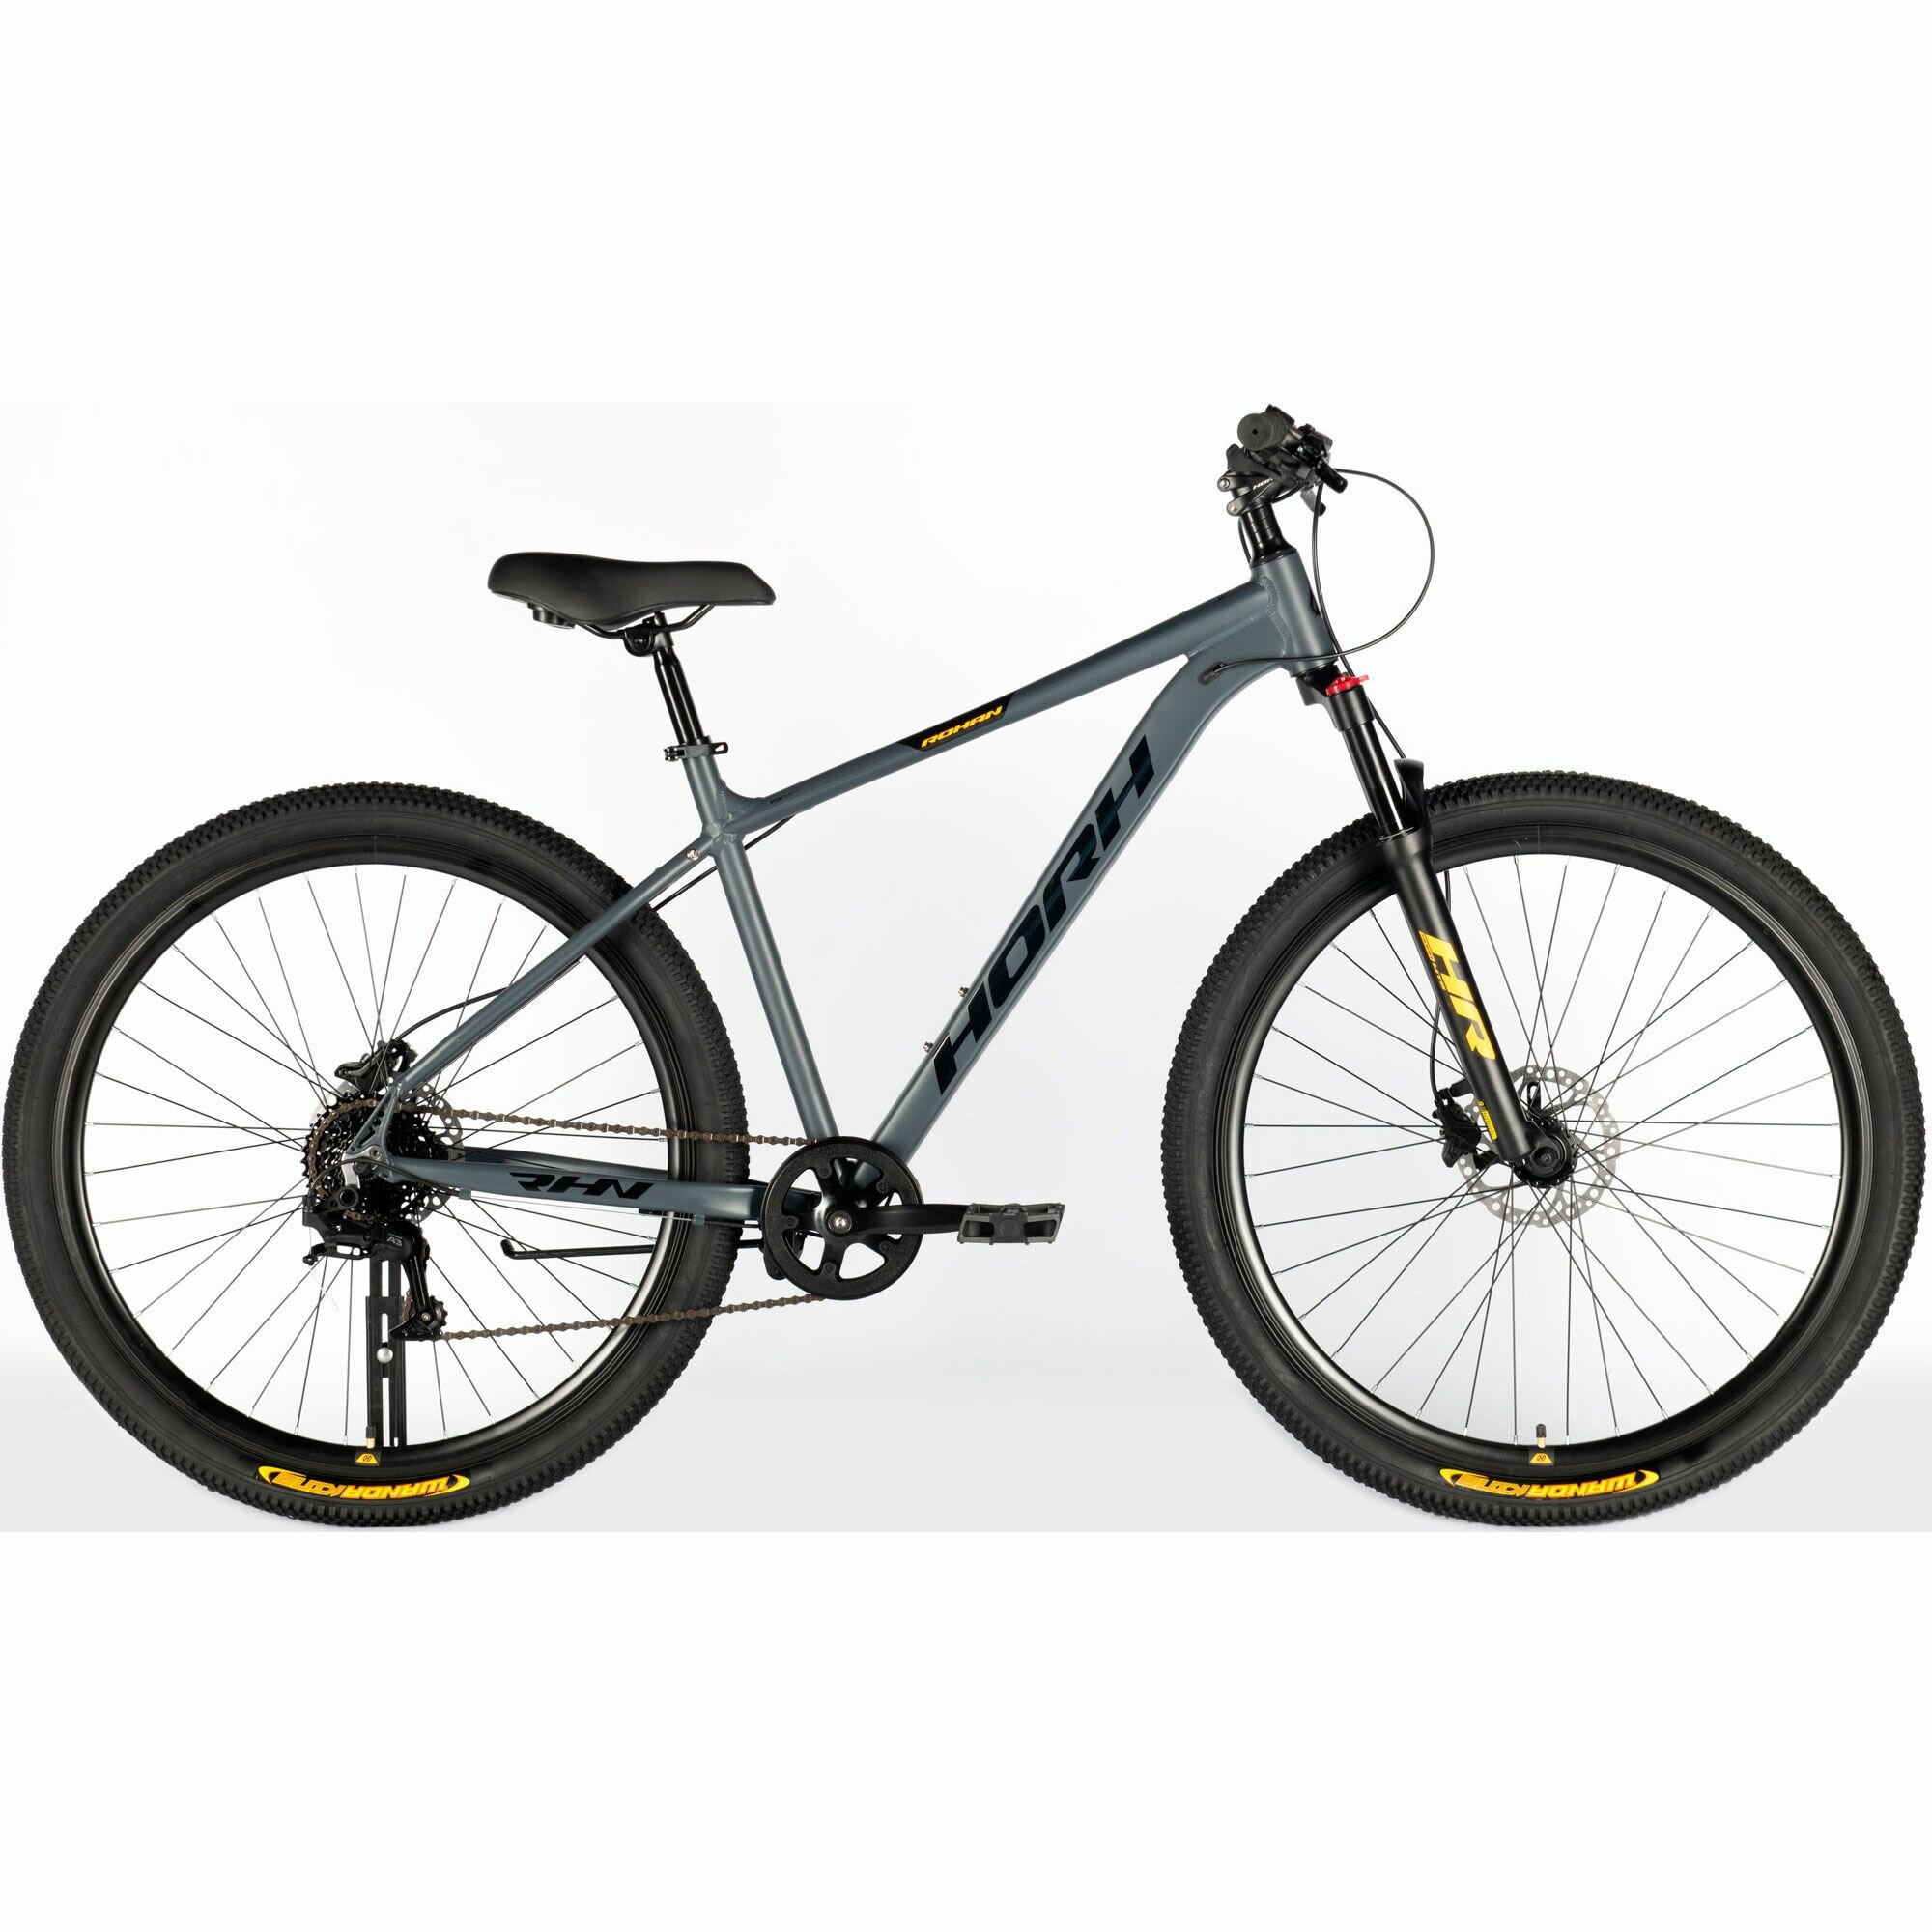 Велосипед горный HORH ROHAN RHD 9.1 29" (2024), хардтейл, взрослый, мужской, алюминиевая рама, 8 скоростей, дисковые гидравлические тормоза, цвет Dark Grey-Black-Yellow, серый/черный/желтый цвет, размер рамы 21", для роста 185-195 см